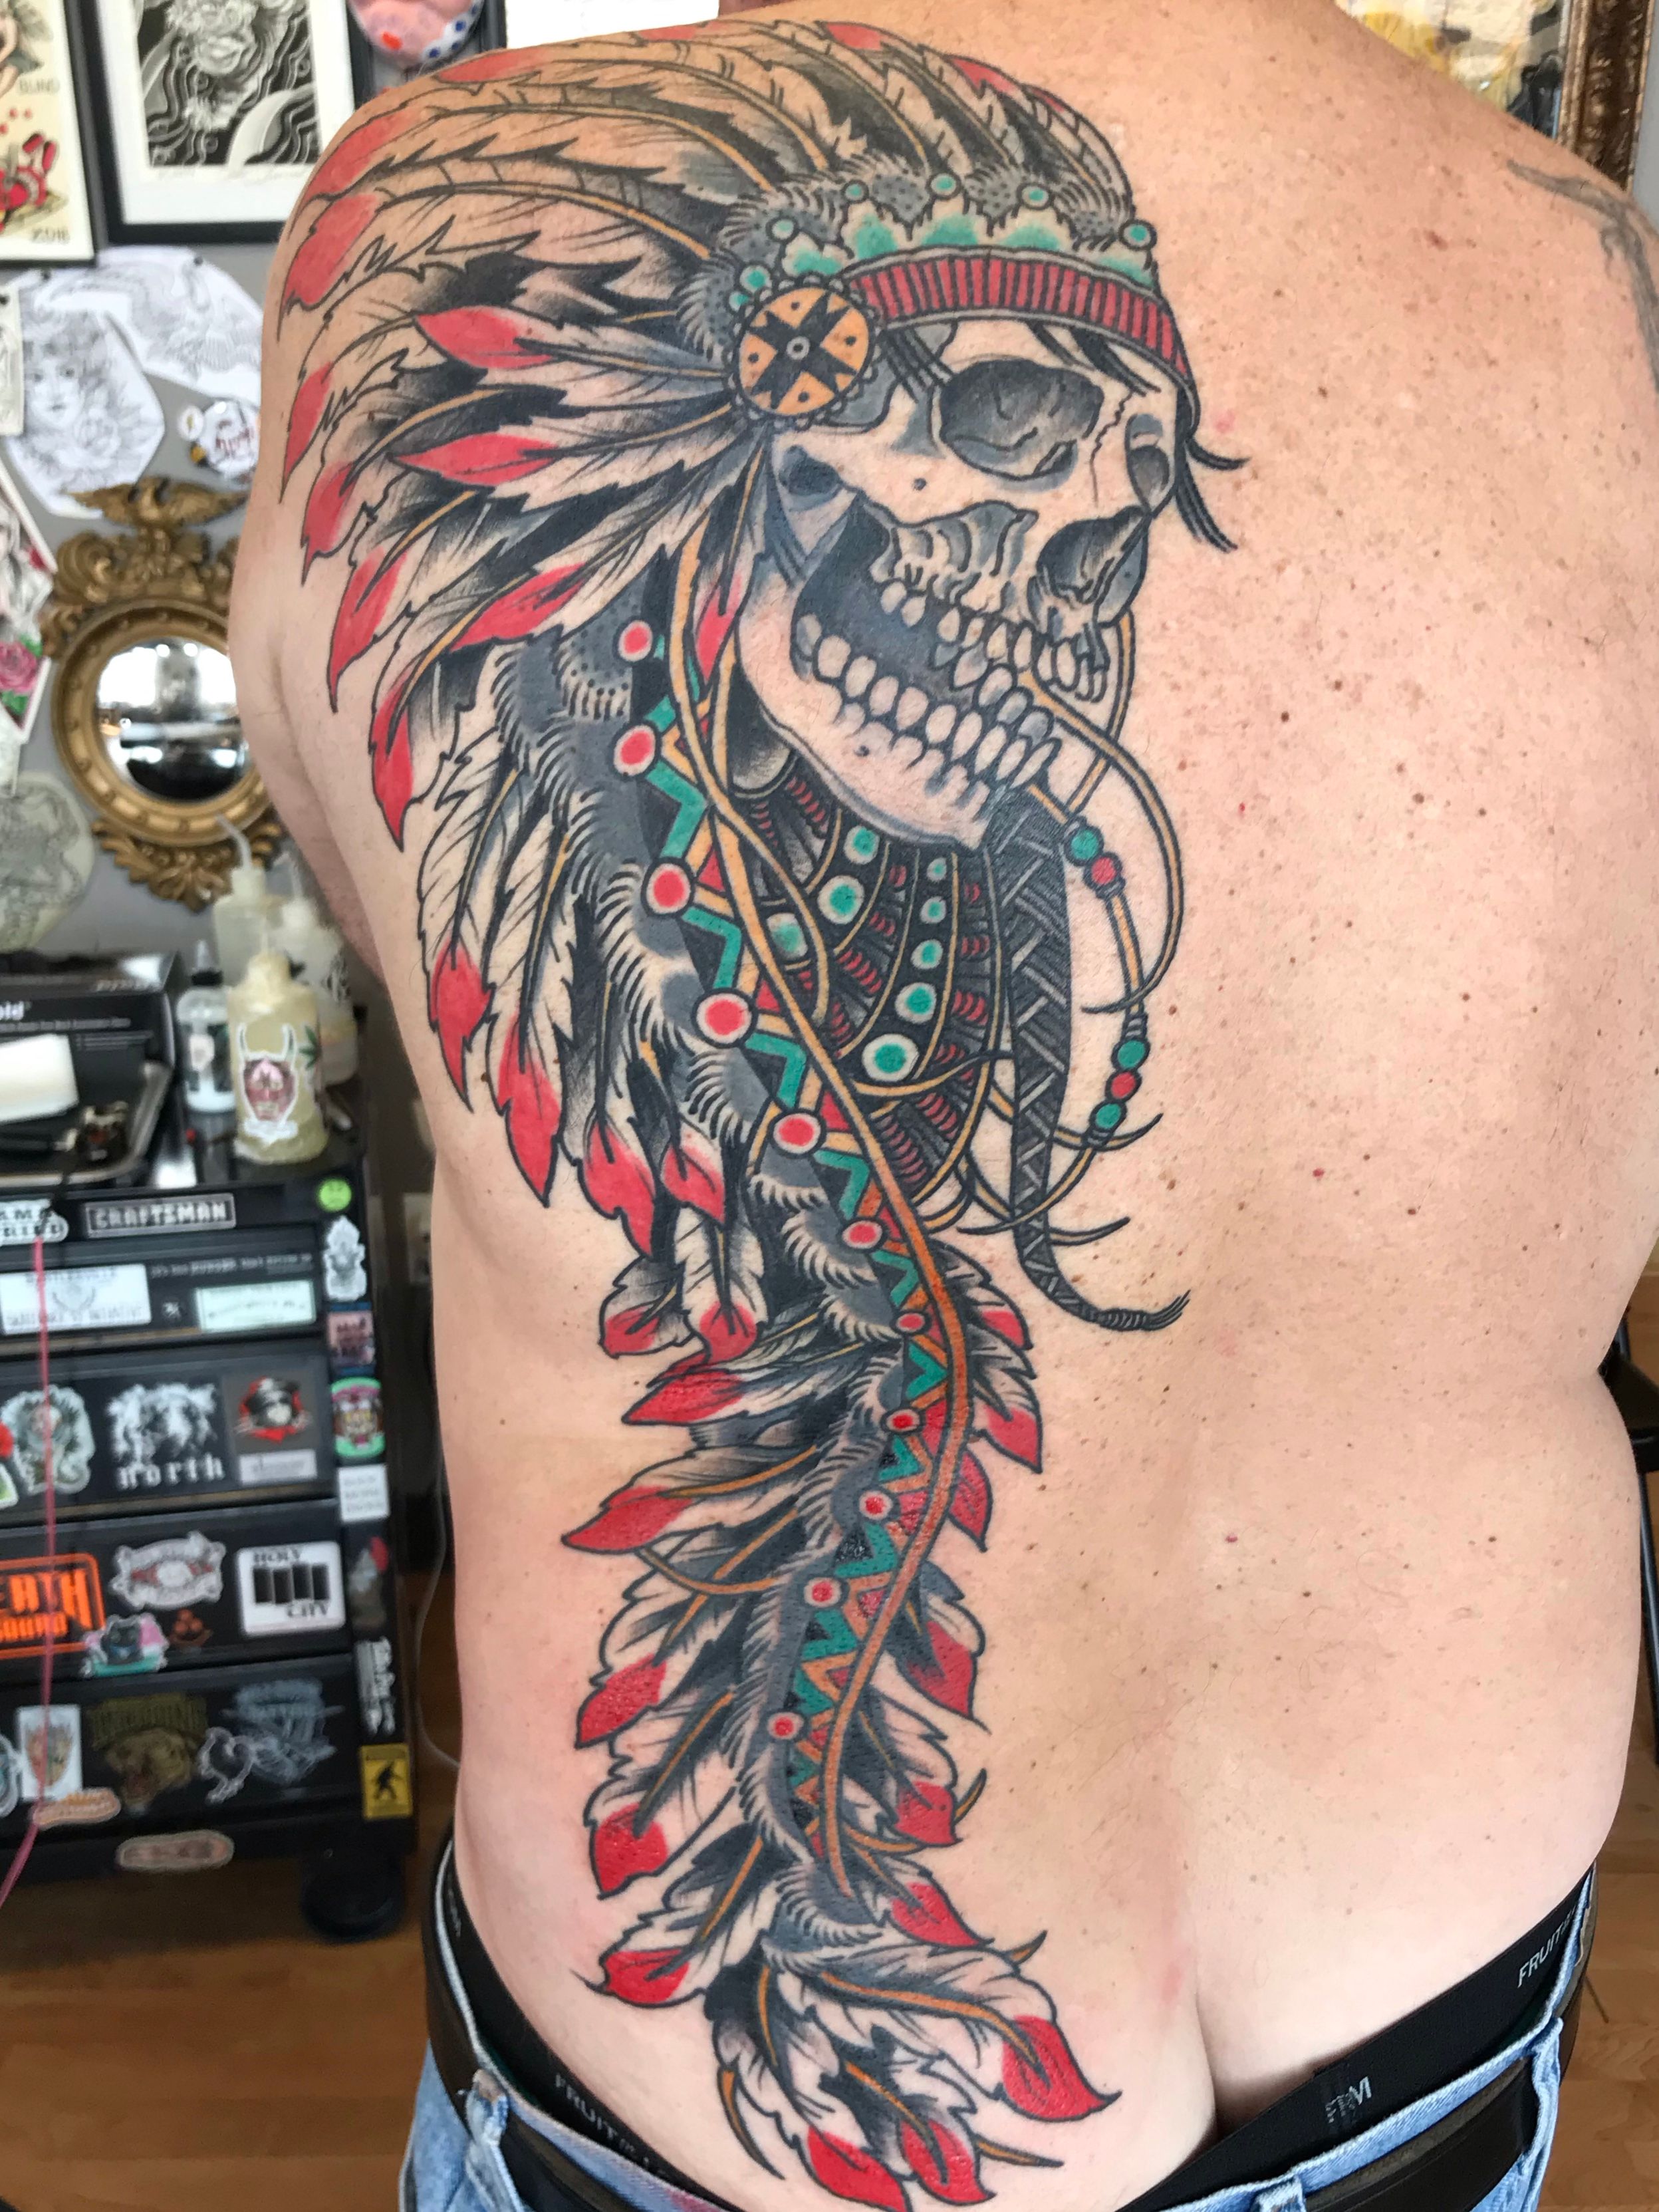 Tattoo Pics on Twitter Native American feathers arm band tattoo  httptcowKijcsL6bD  Twitter